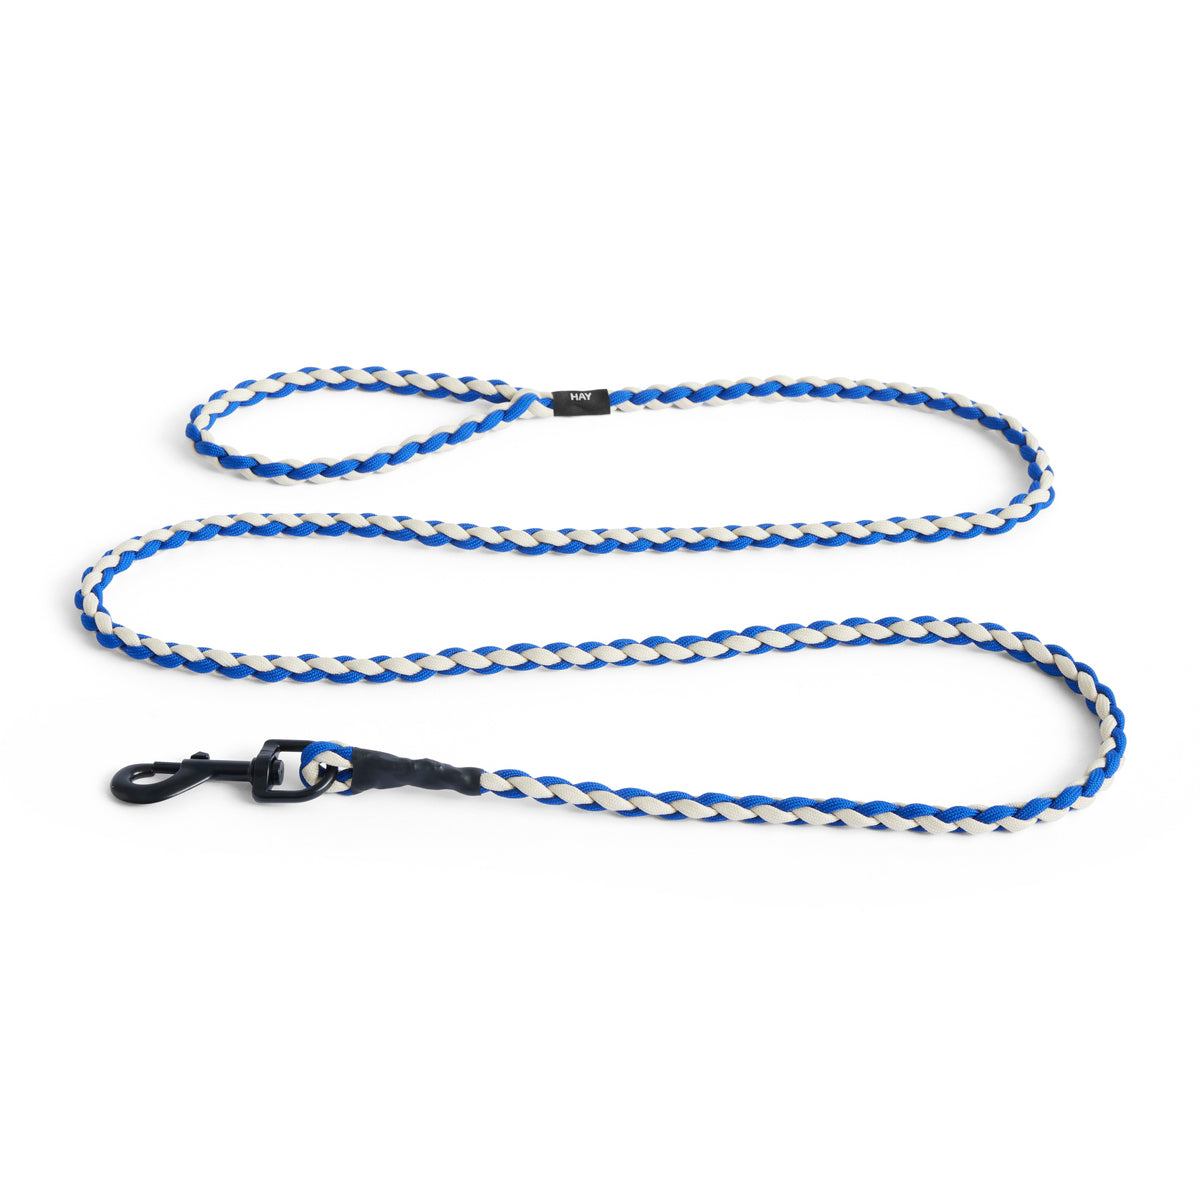 Braided Blue, Off-white dog leash - HAY